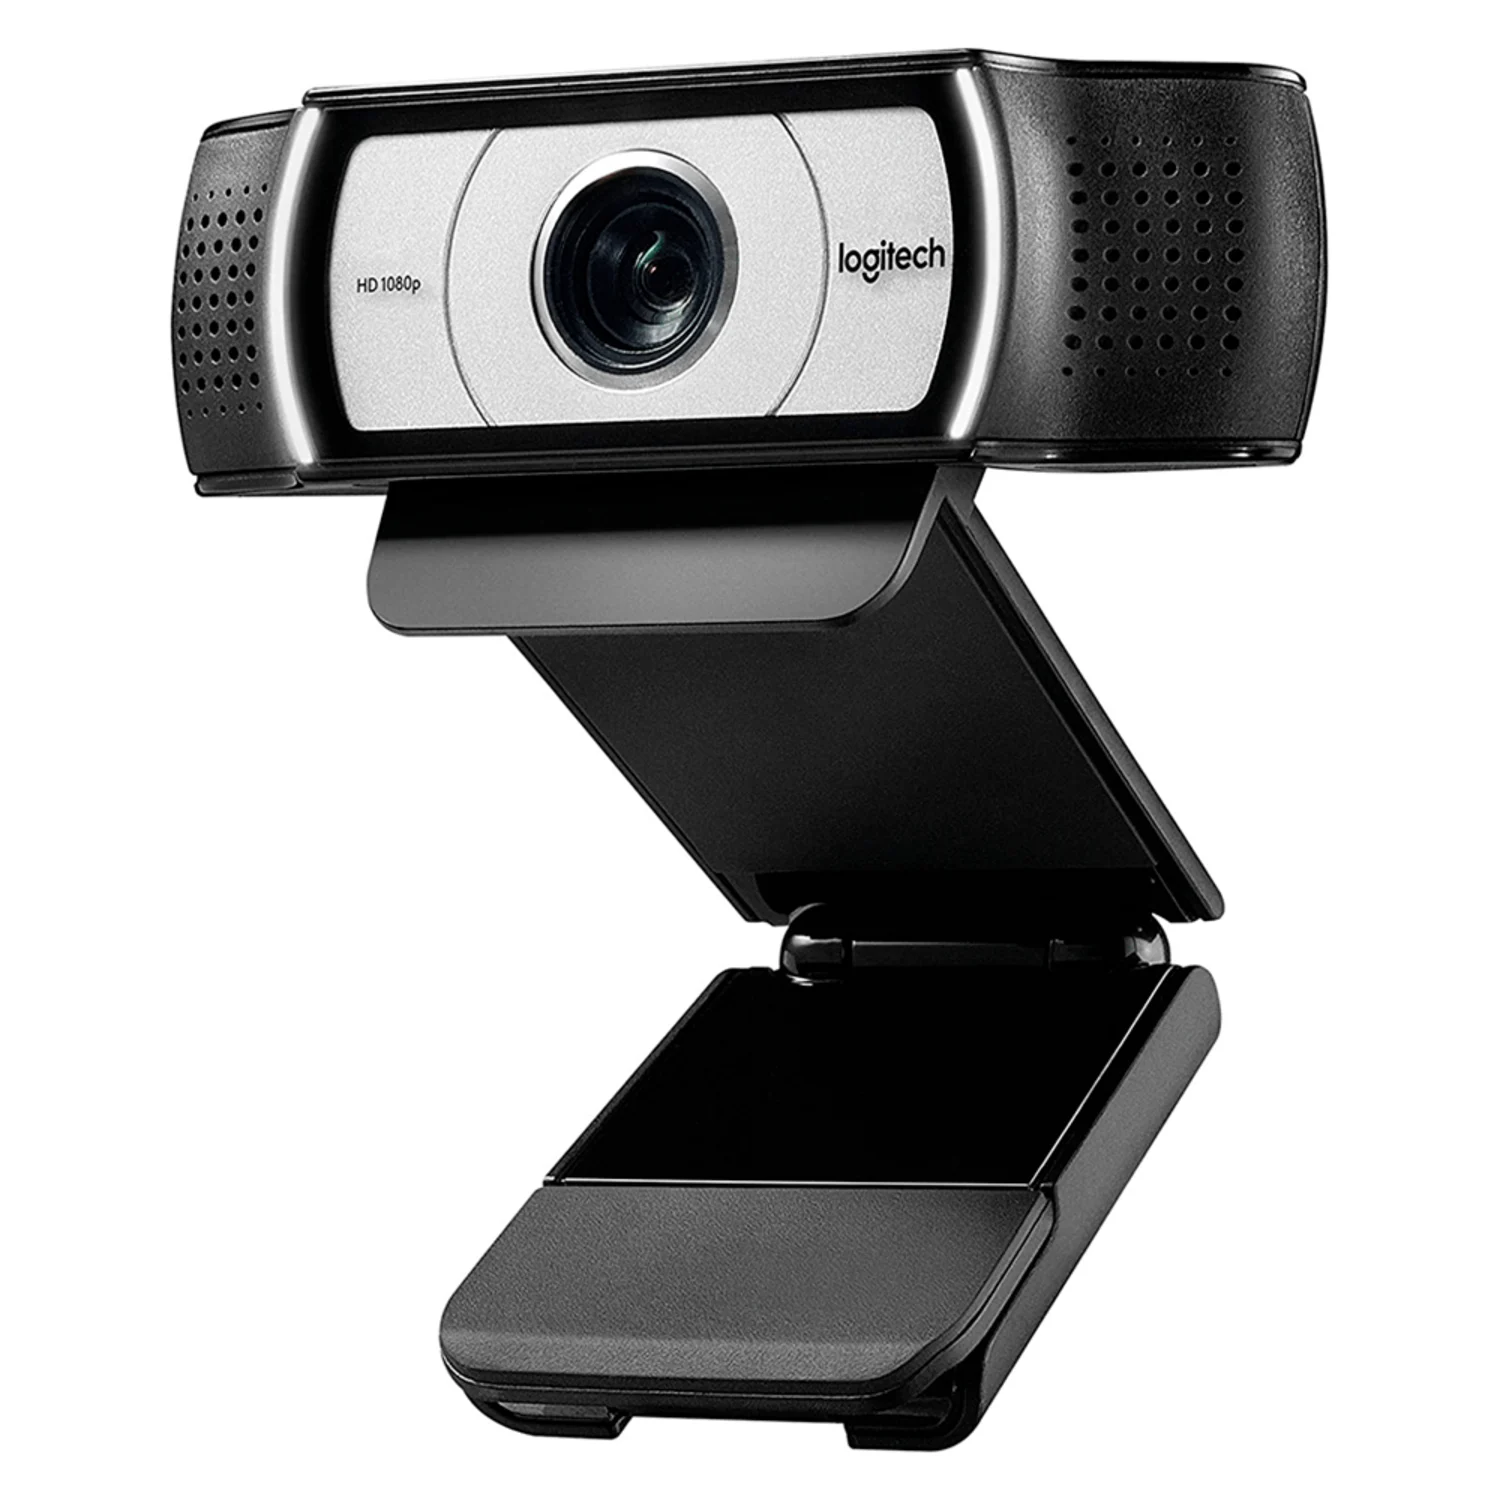 Webcam Logitech C930E - (960-000971)